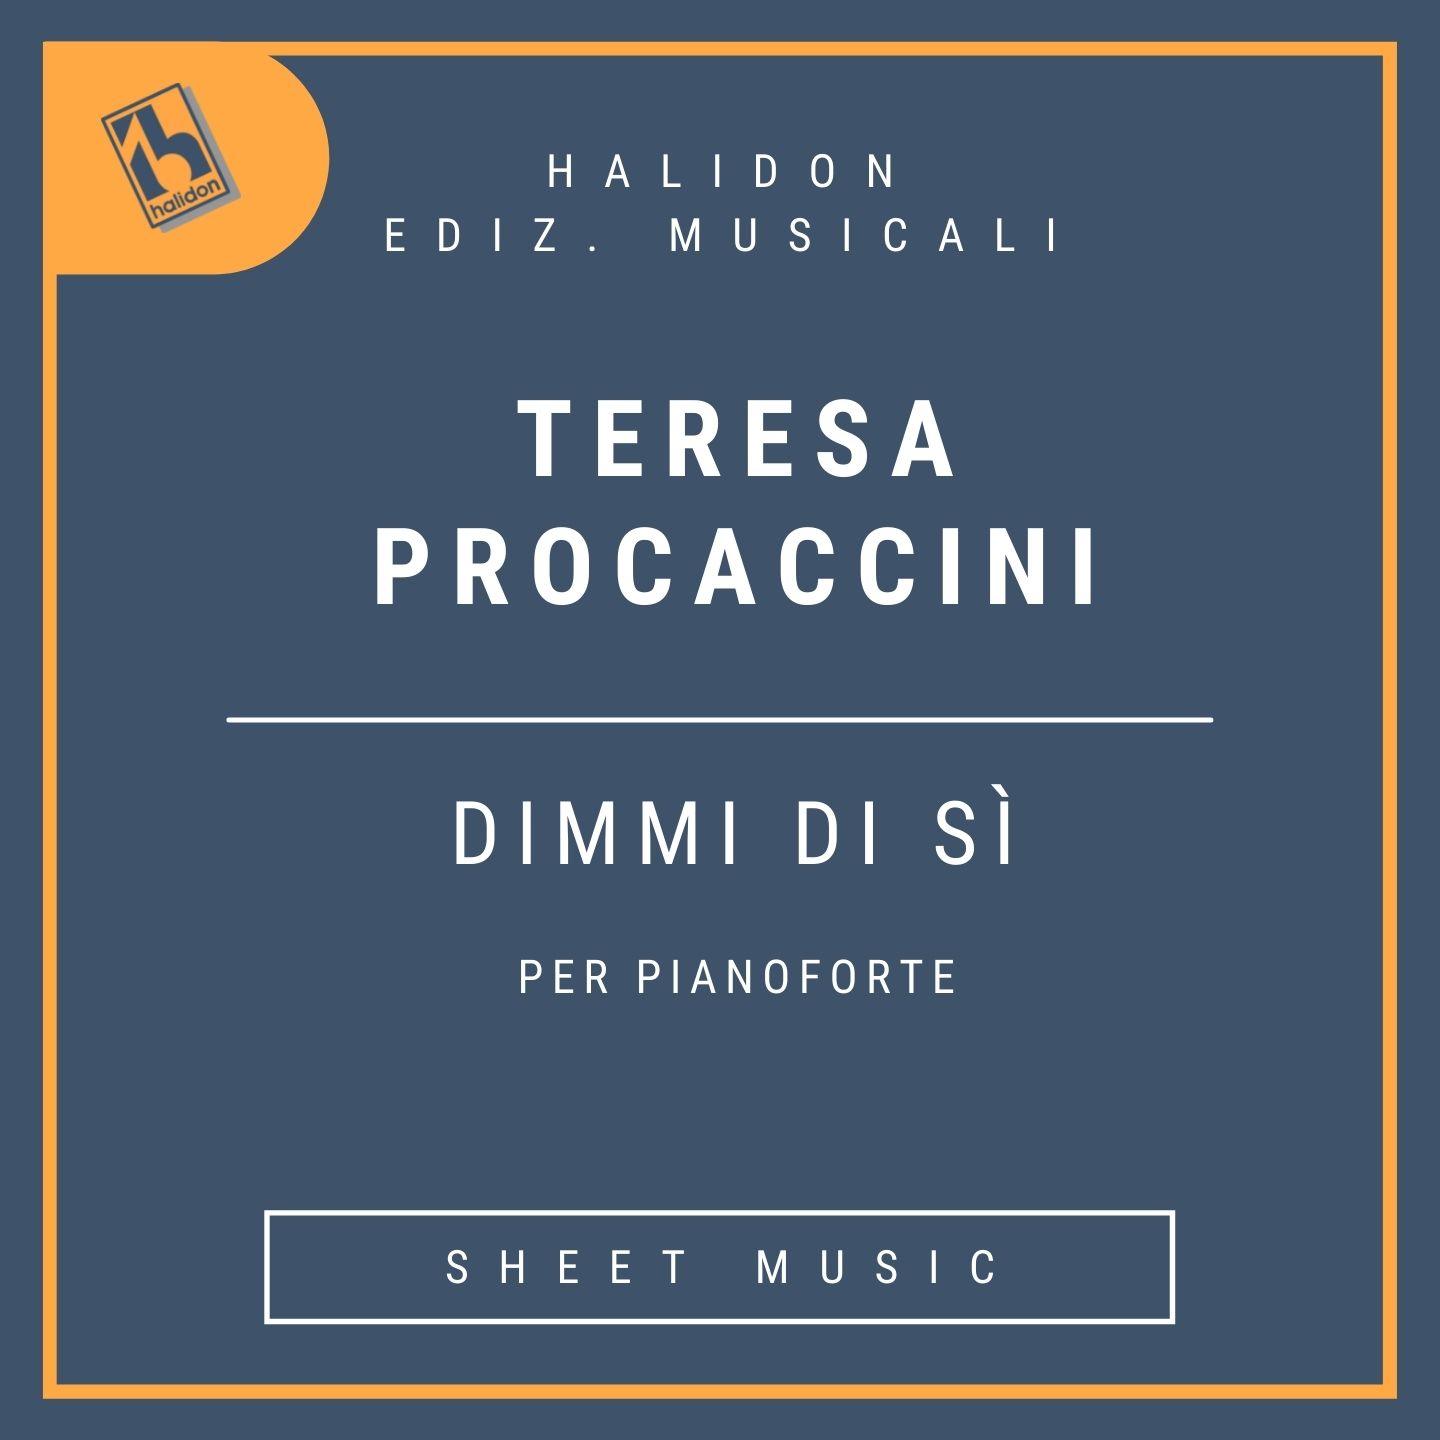 Teresa Procaccini - Dimmi di sì